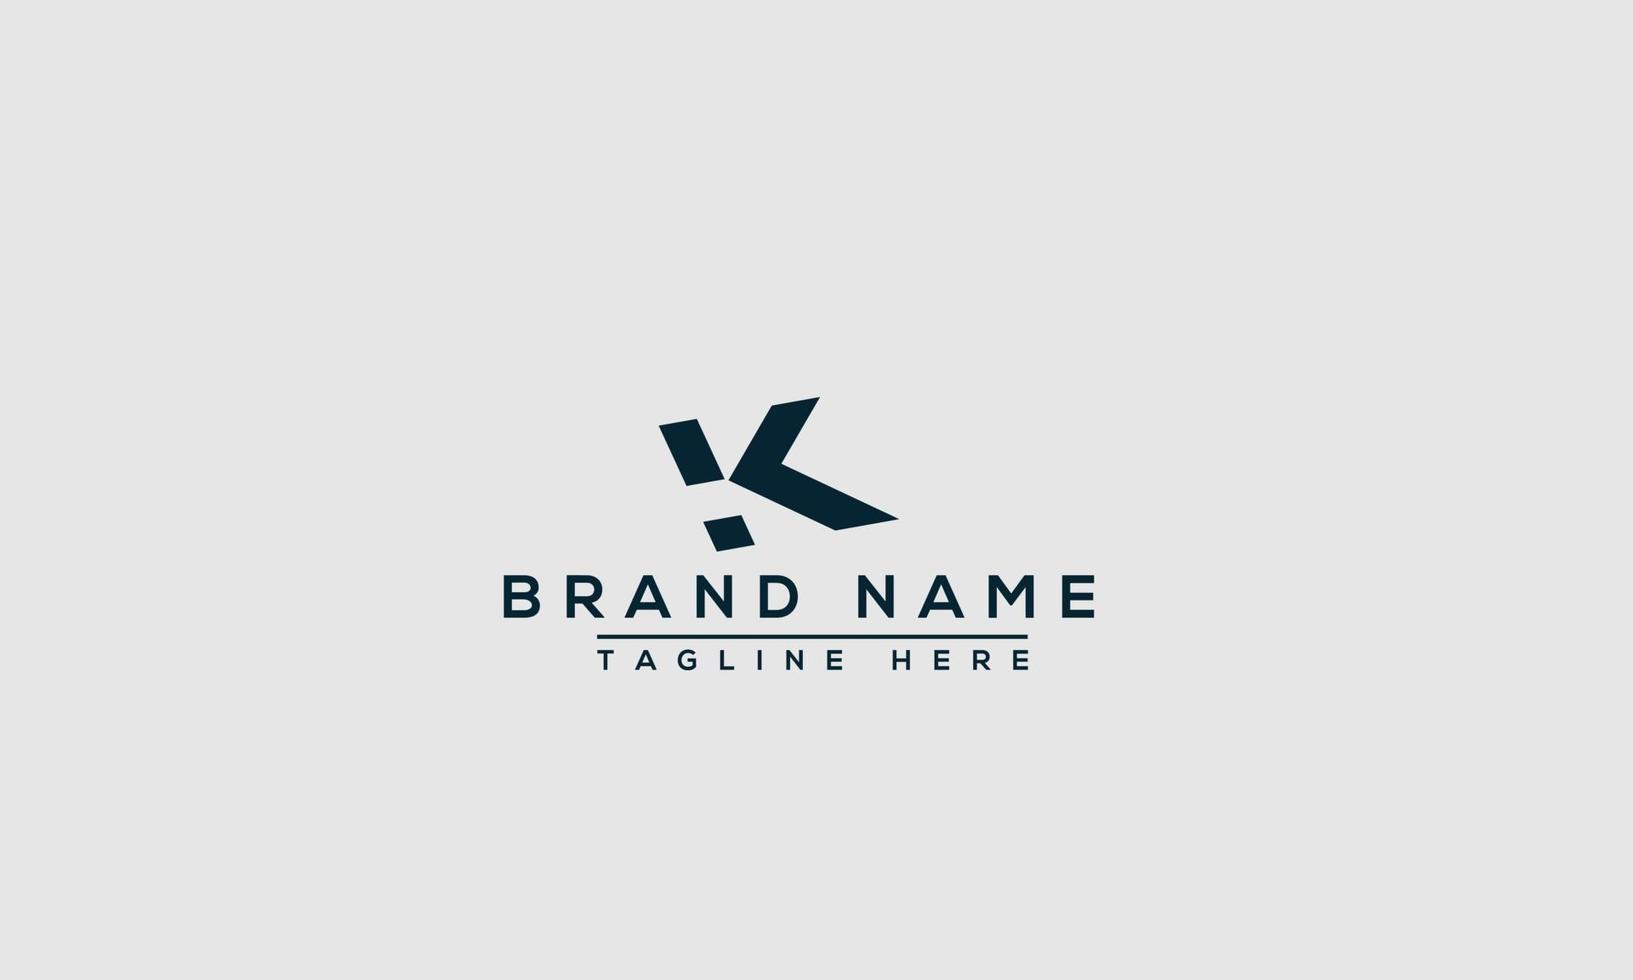 elemento de marca gráfico vectorial de plantilla de diseño de logotipo k. vector